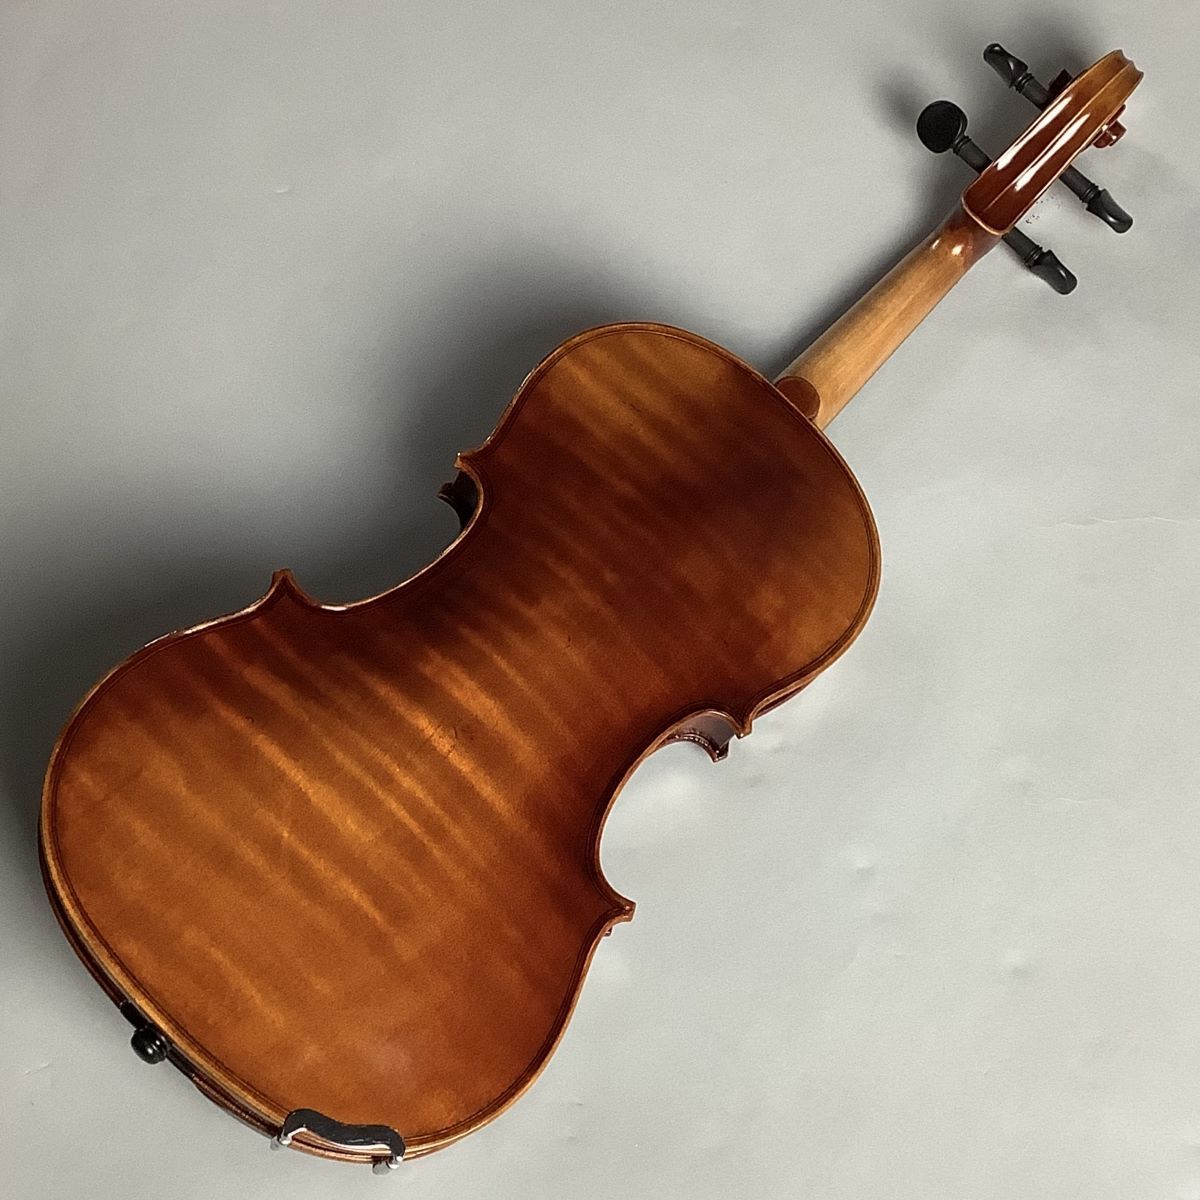 【人気セール】美品 バイオリン 弓 1/4サイズ Jhoann Meinhold ヨハン マインホールド 子供用 バイオリン